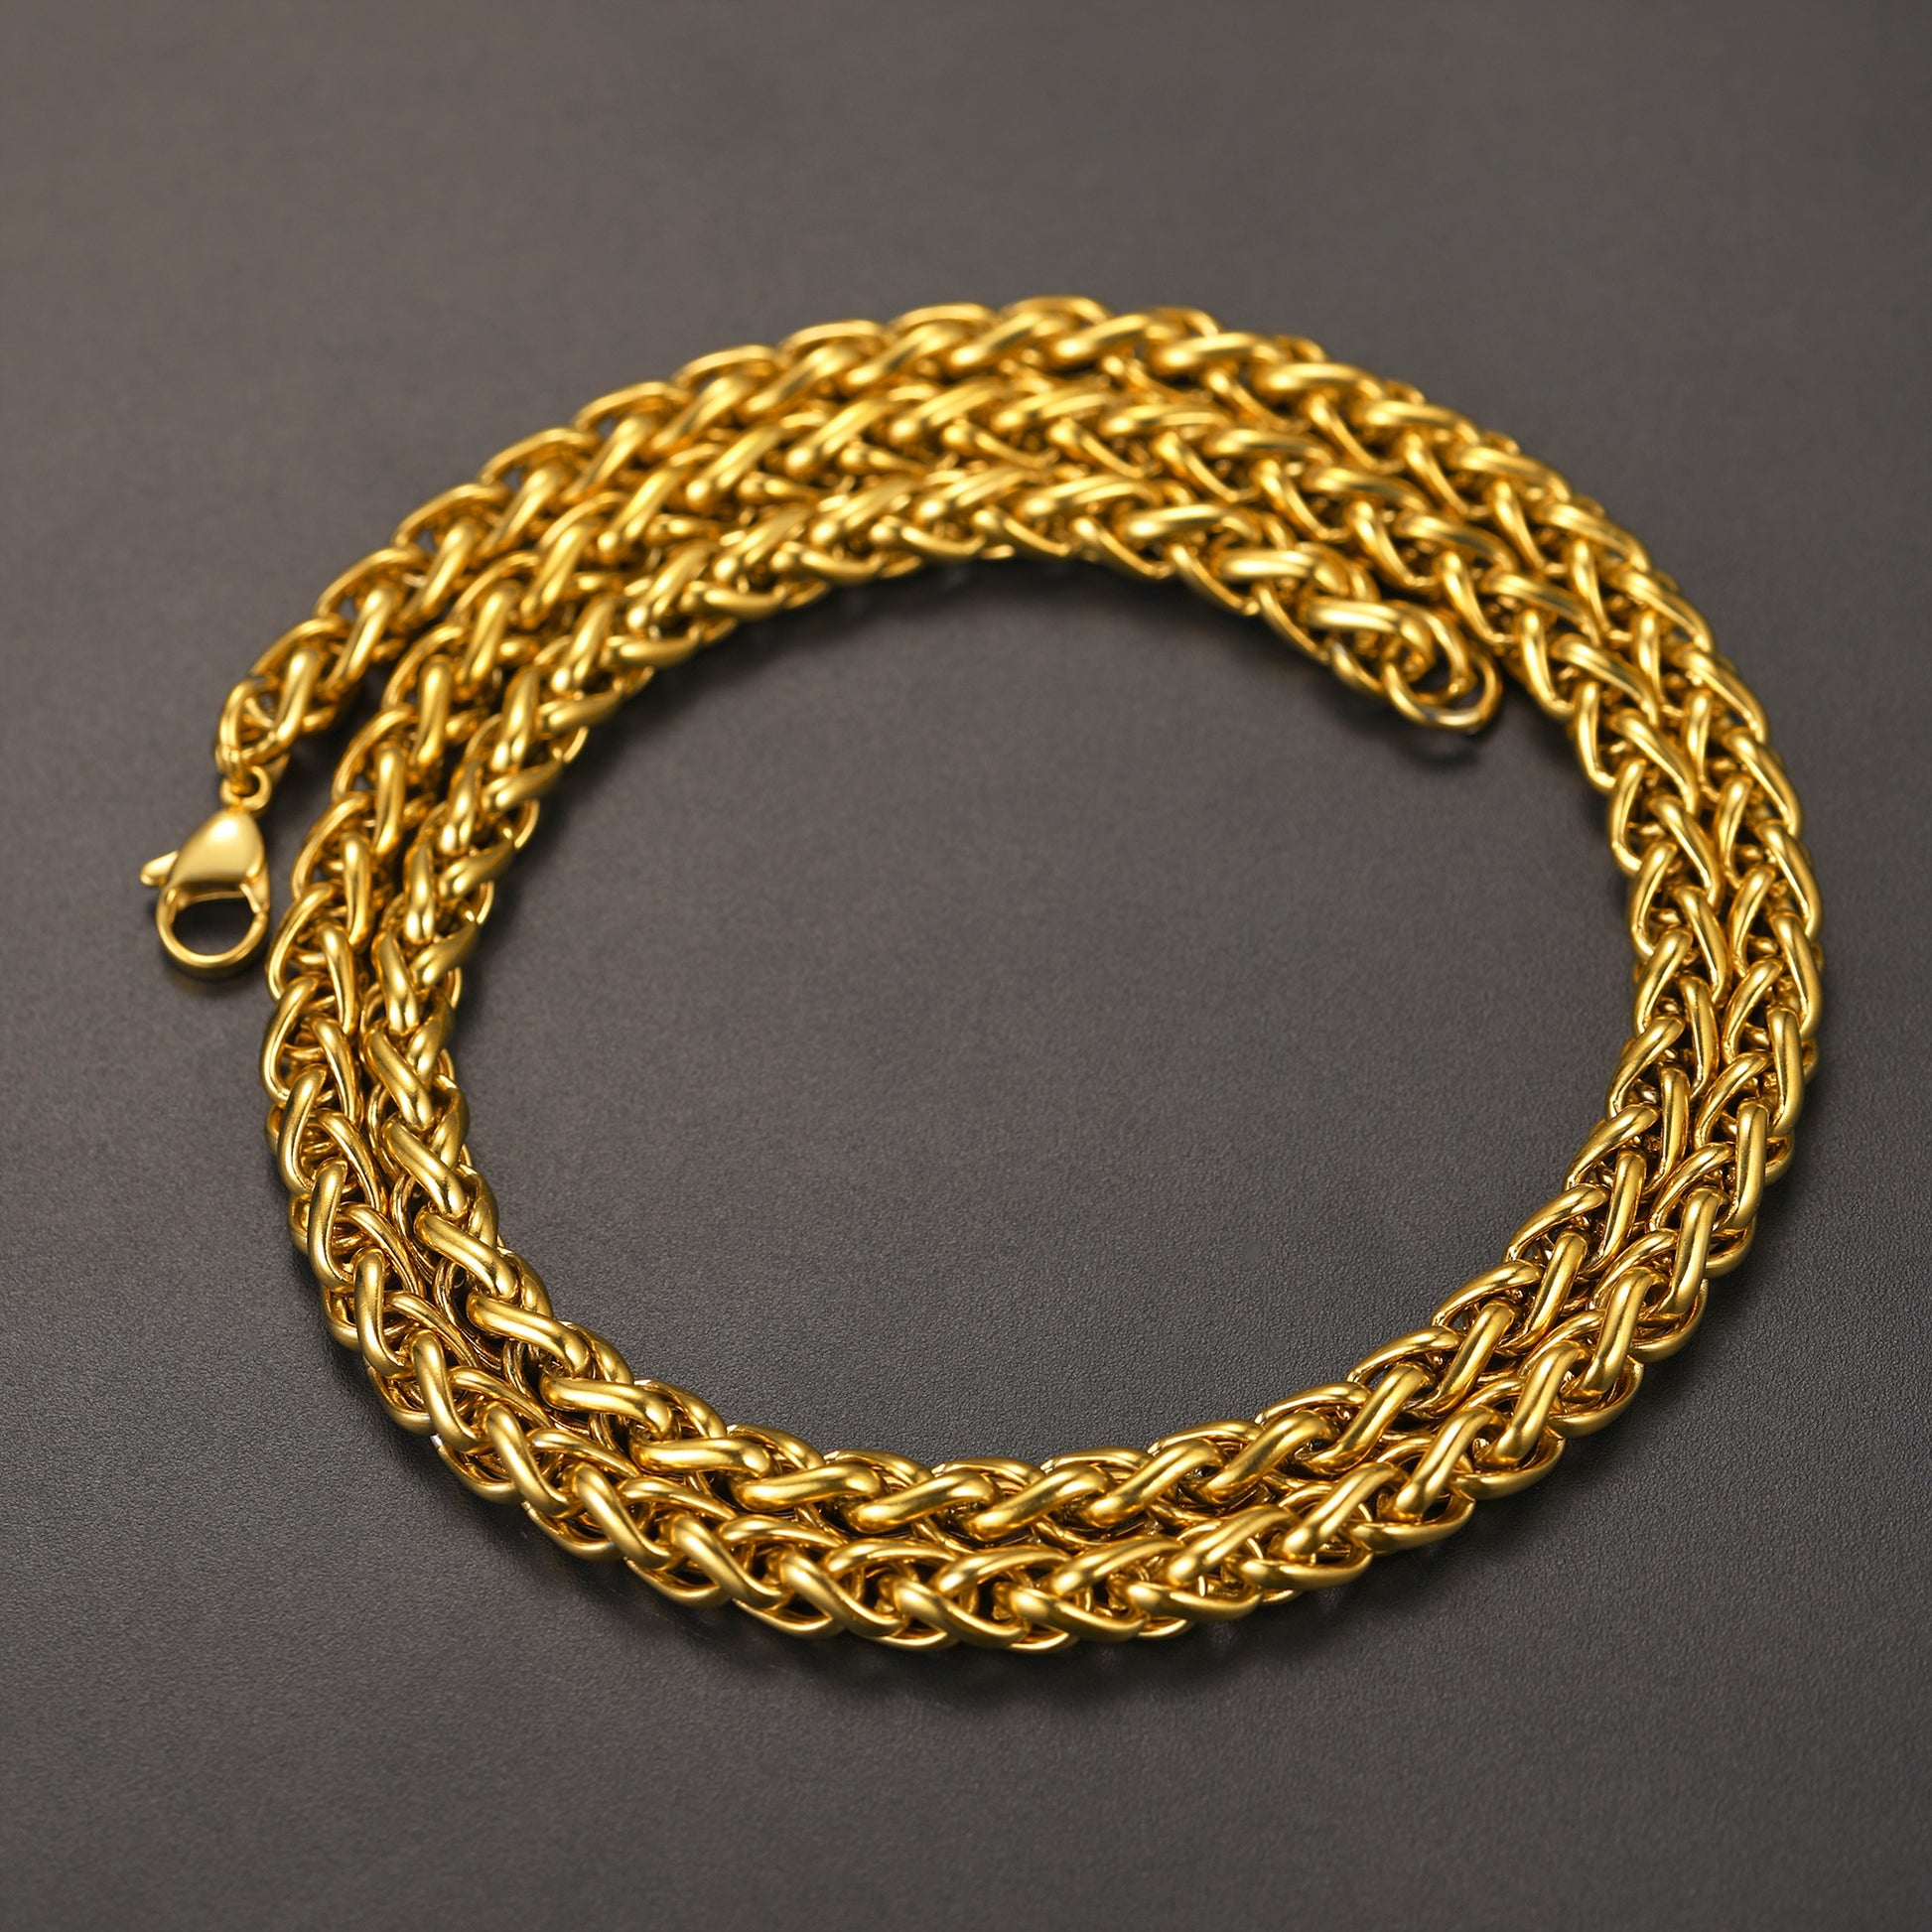 FaithHeart Stainless Steel Spiga Wheat Chain Necklace for Men Women,18''-30'' FaithHeart